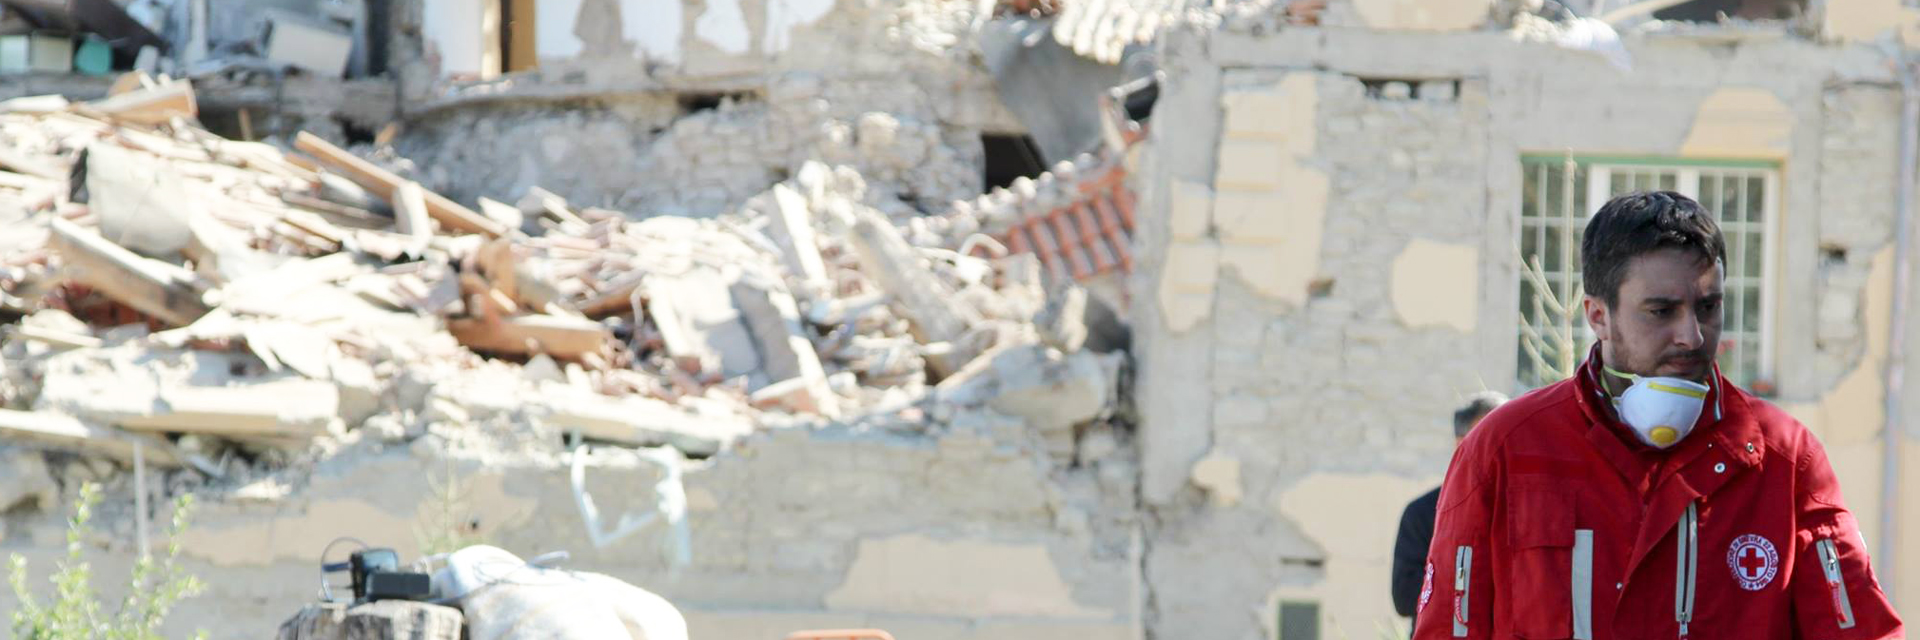 Fassungslosigkeit des Rotkreuzhelfers nach dem Erdbeben in Italien